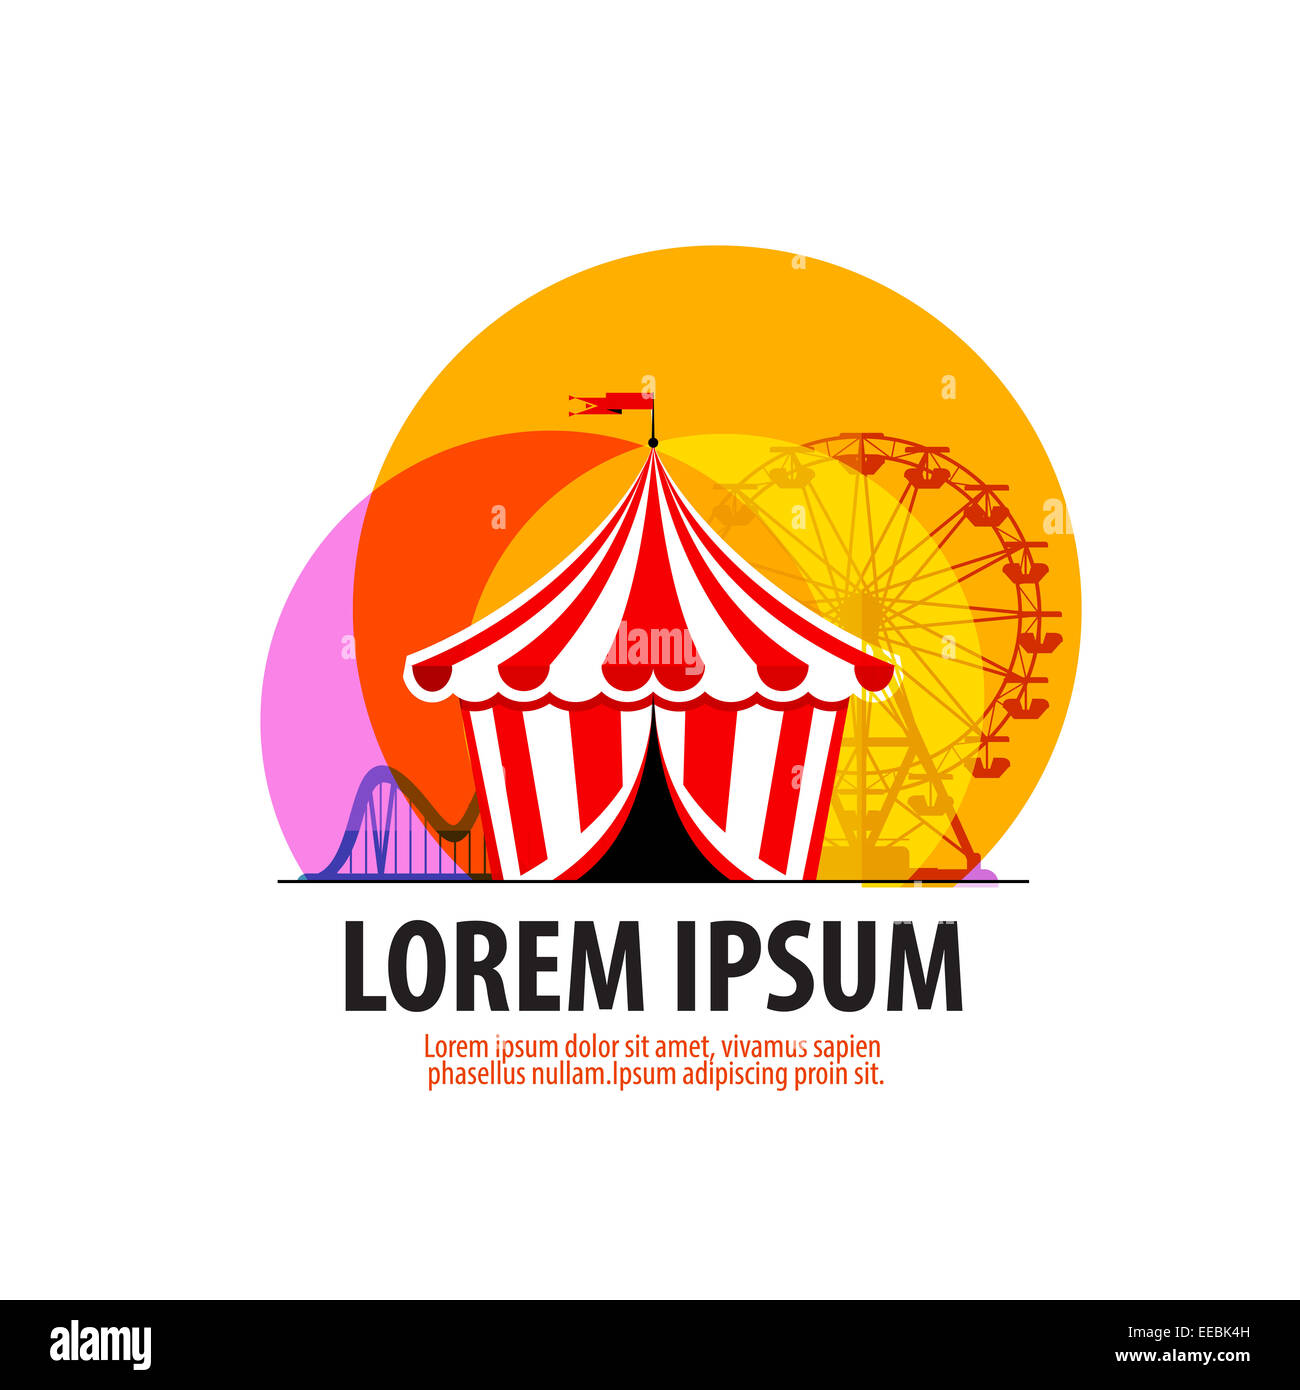 circus vector logo design template. carousel or fair icon. Stock Photo